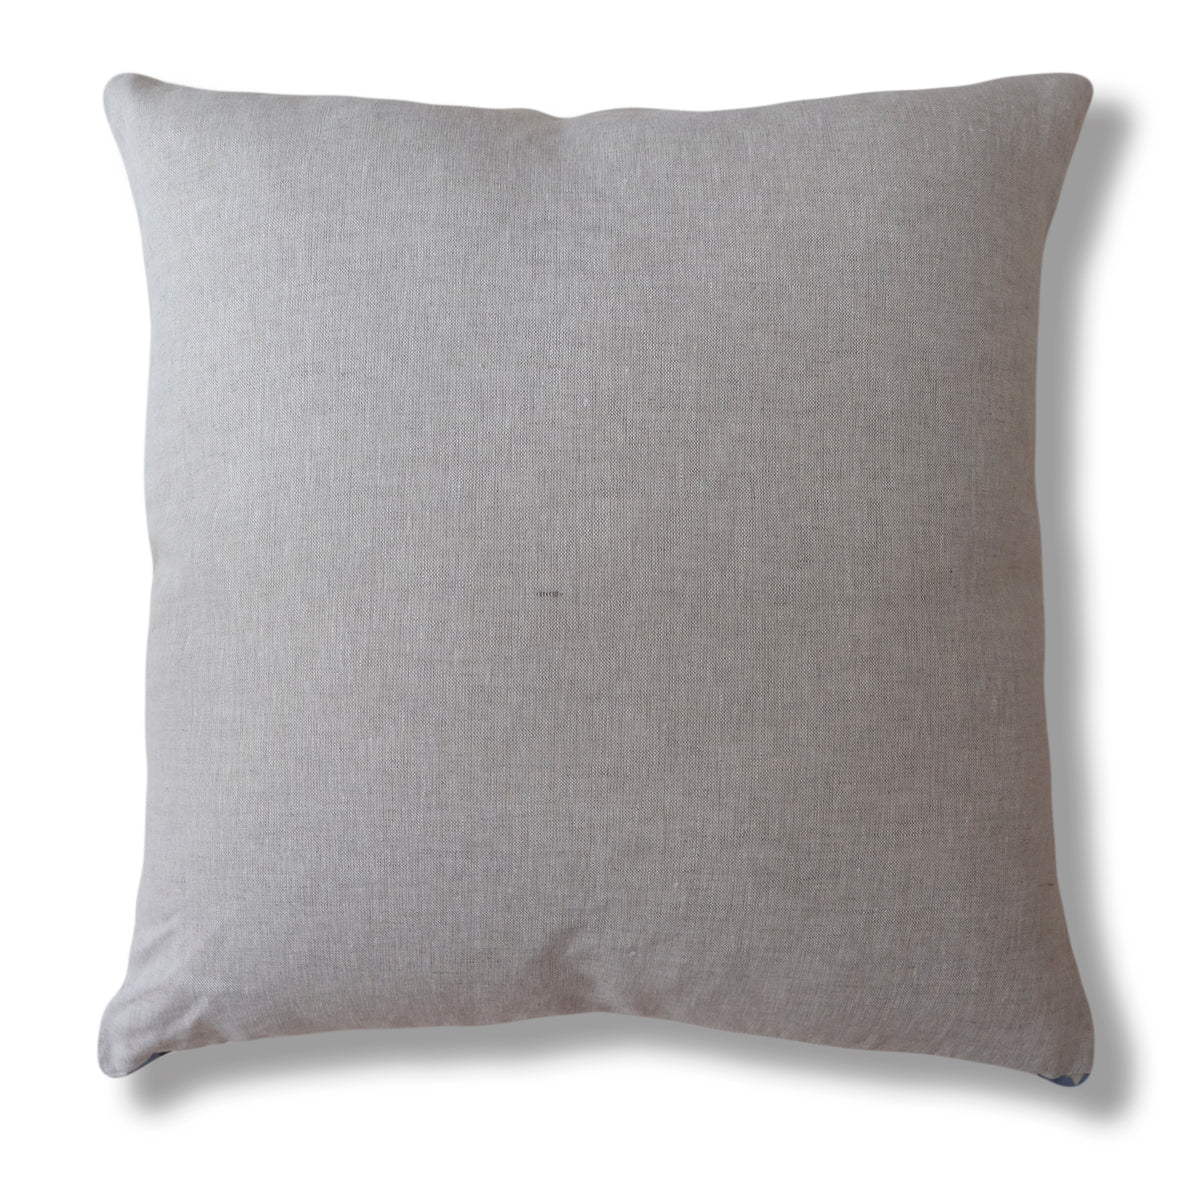 *New* Monica Bluebird Pillow